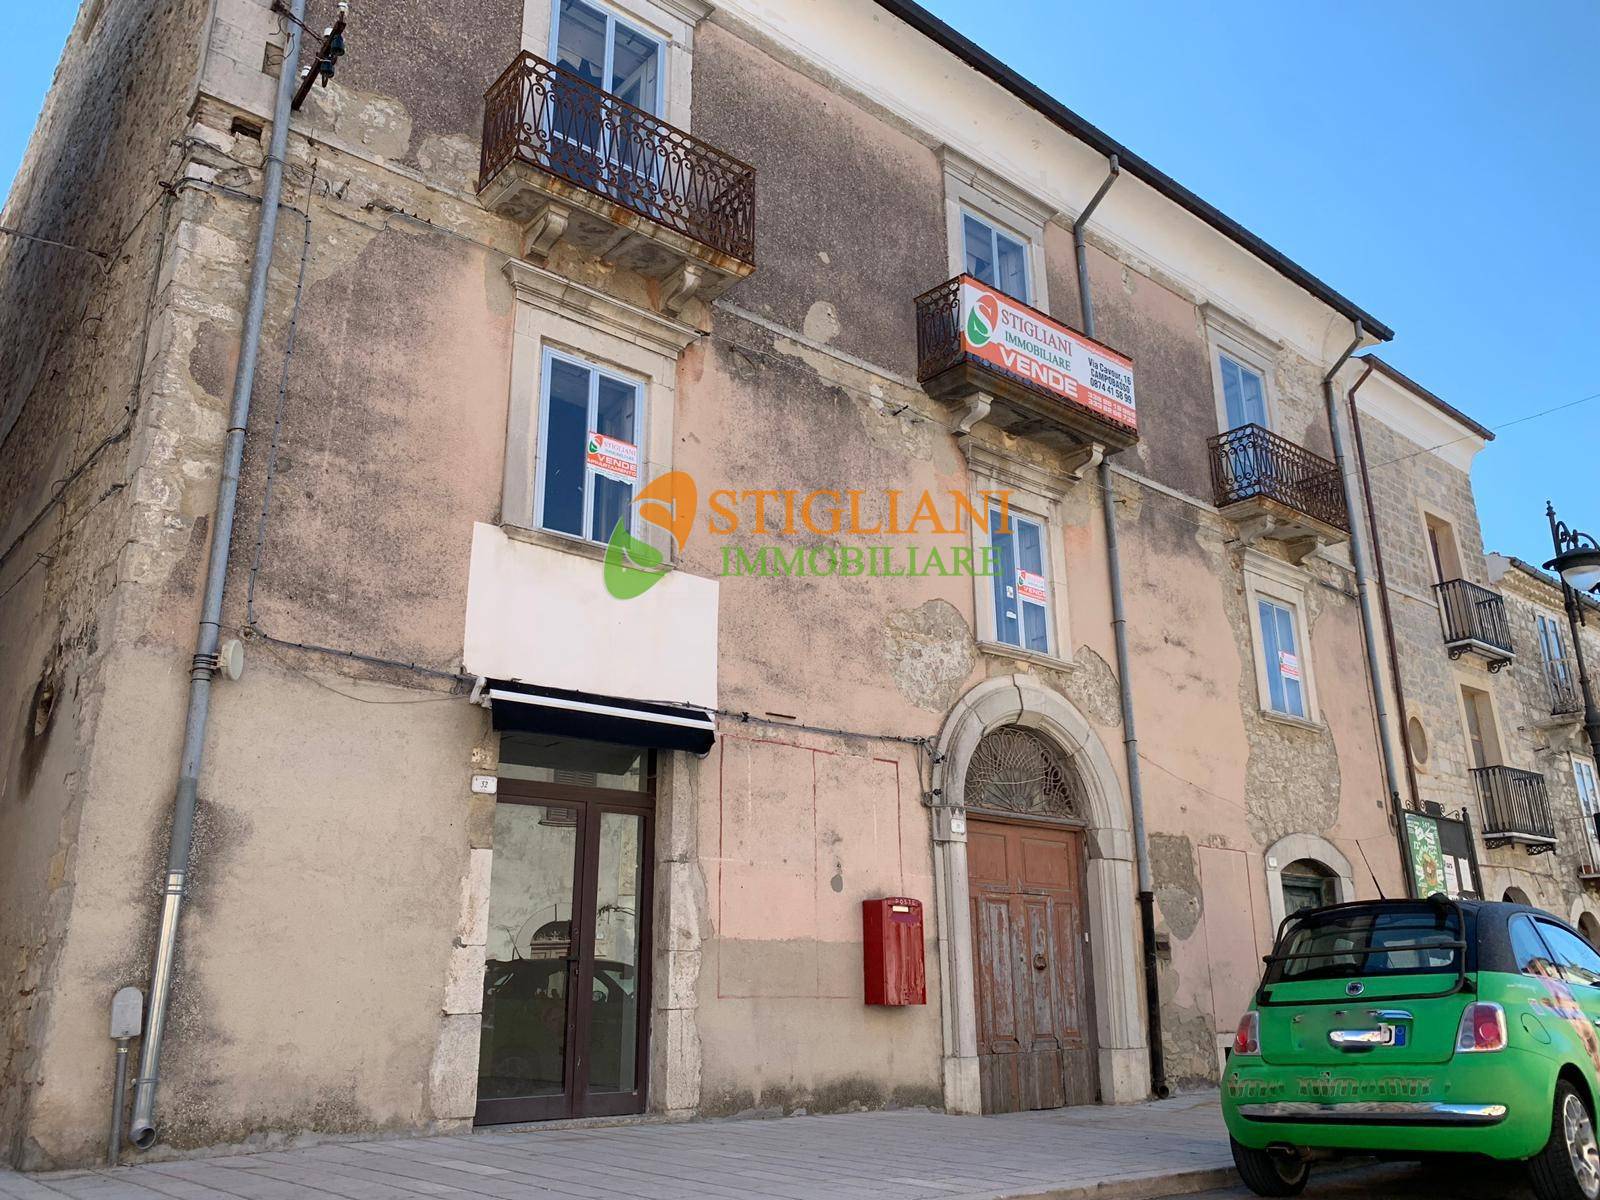 Rustico / Casale in vendita a Montagano, 13 locali, zona Località: CorsoUmbertoI, prezzo € 80.000 | PortaleAgenzieImmobiliari.it